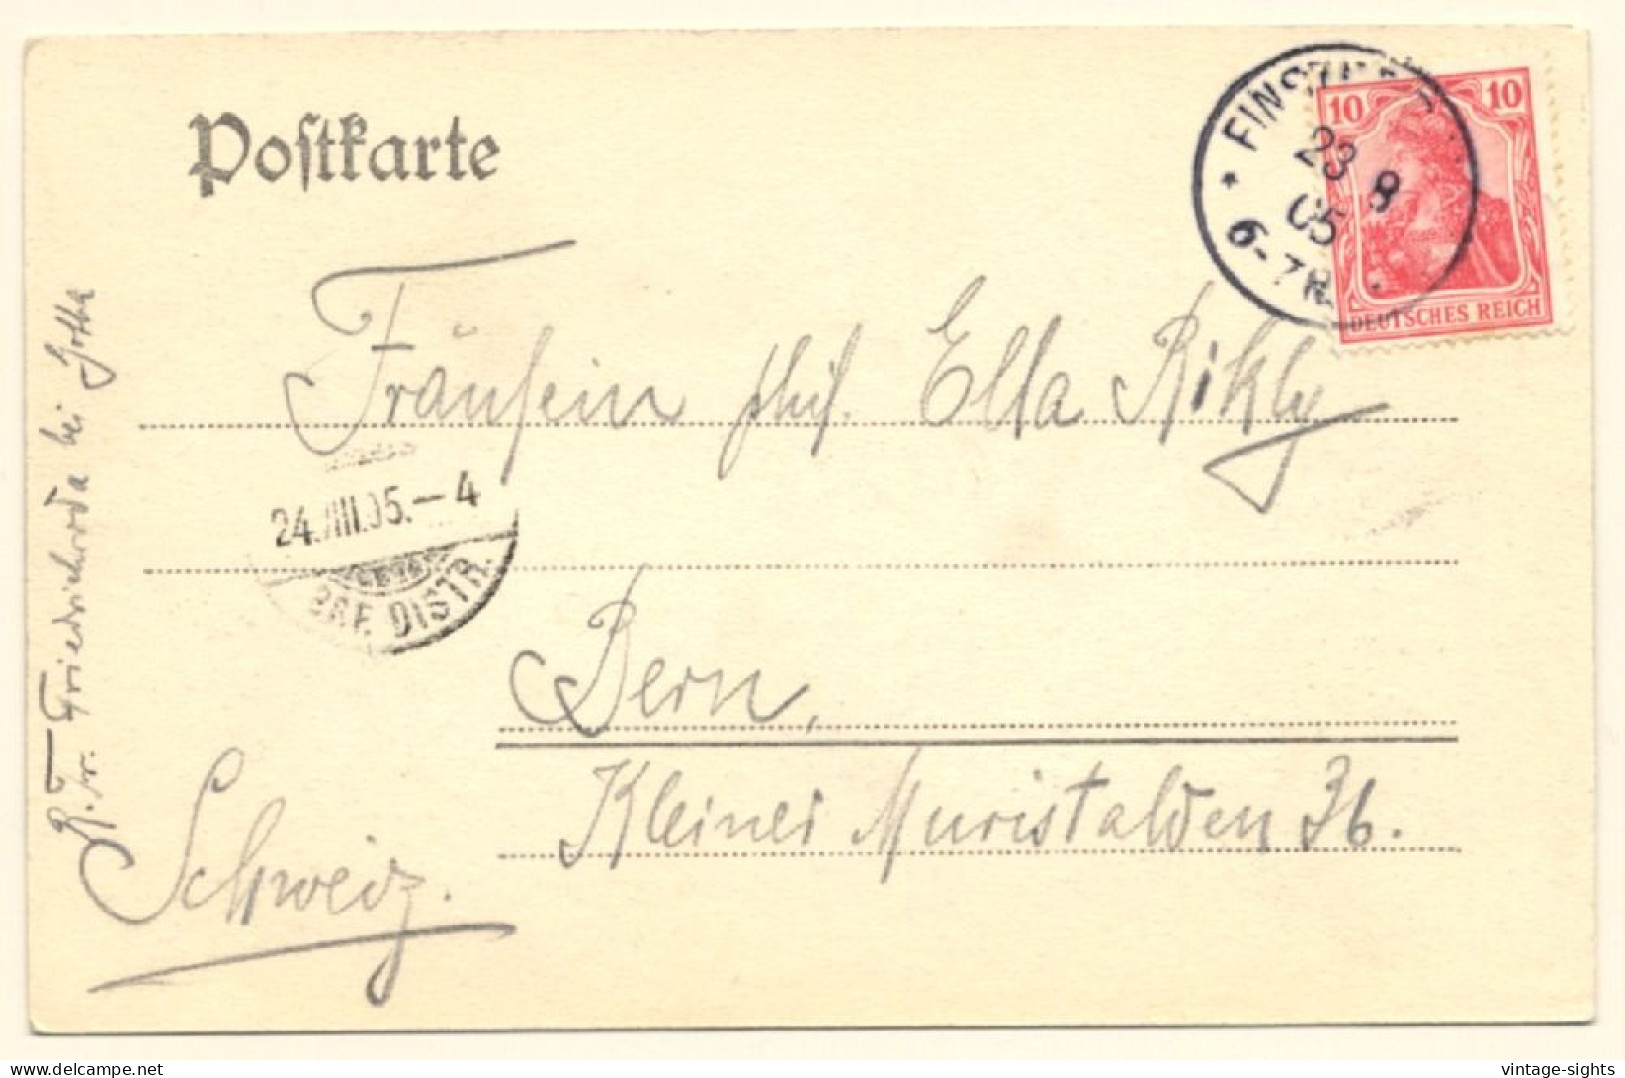 Finsterbergen / Germany: Blick Vom Kurhaus Felsenstein (Vintage PC 1905) - Friedrichroda